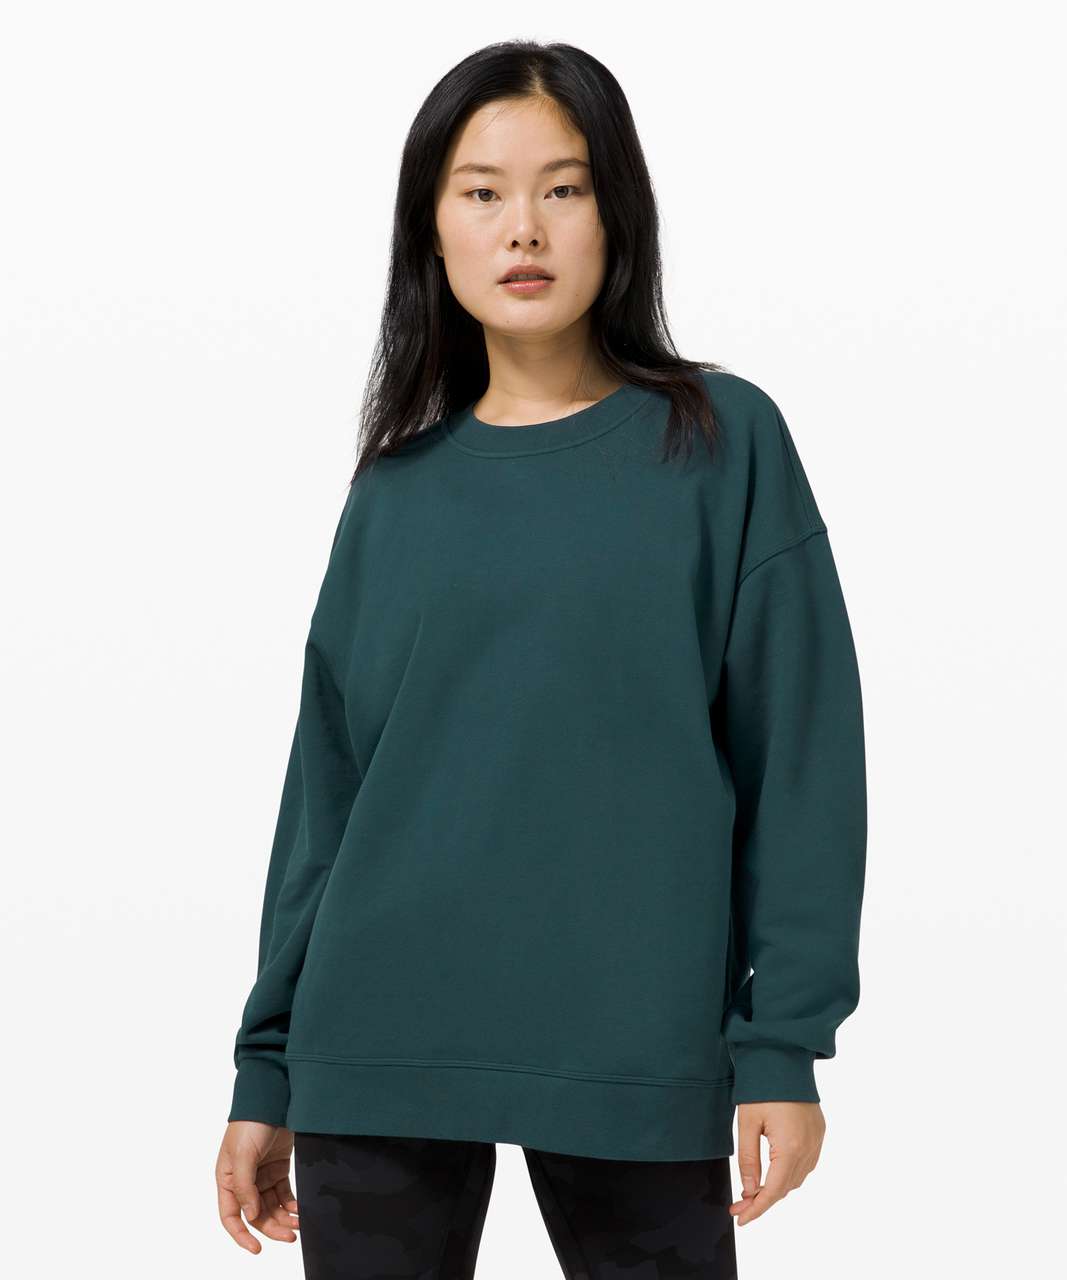 NWT Lululemon perfectly oversized crew neck sweatshirt Size: 8